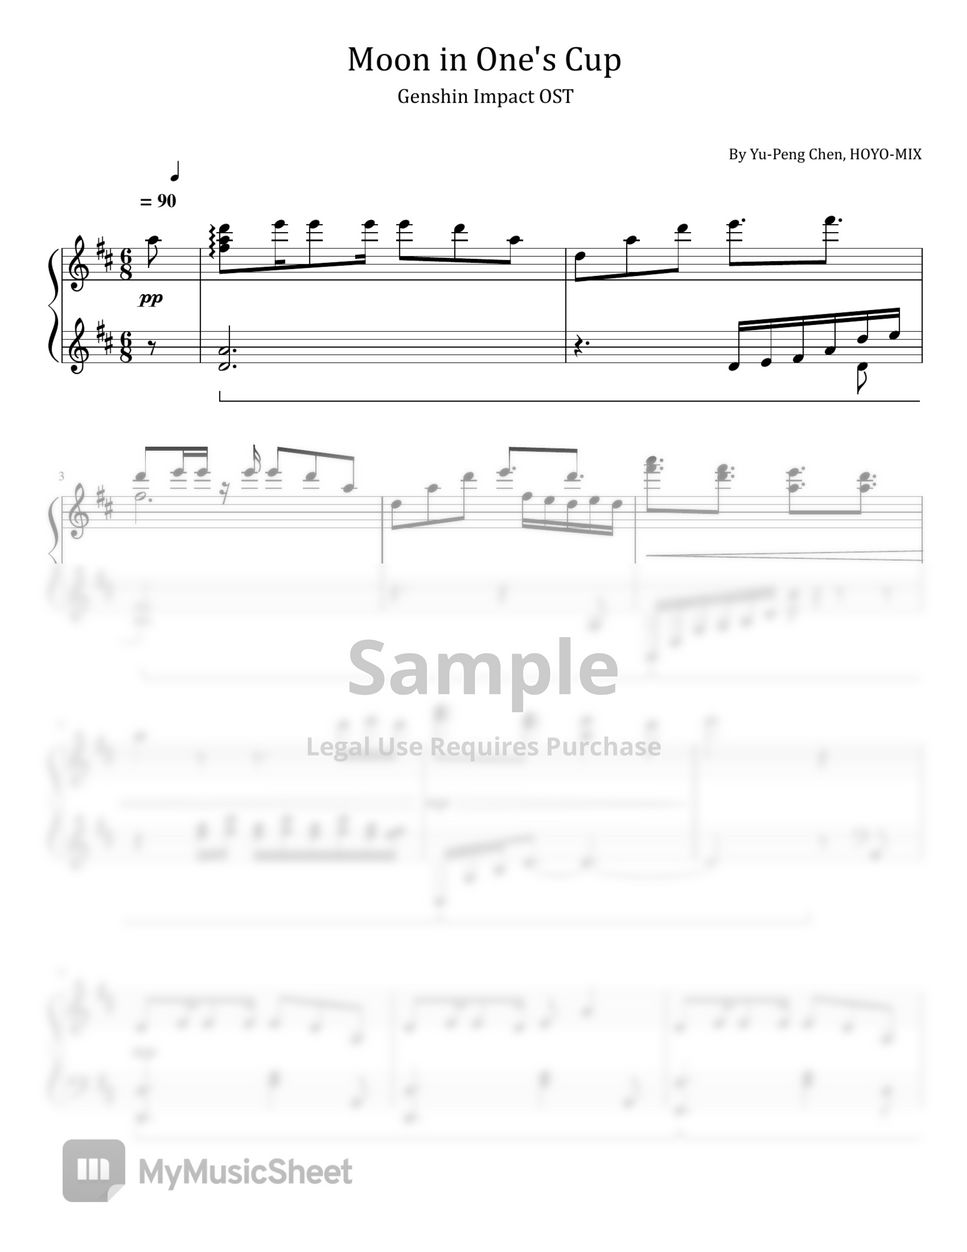 原神 - Moon in One's Cup (Genshin Impact OST - For Piano Solo) by poon